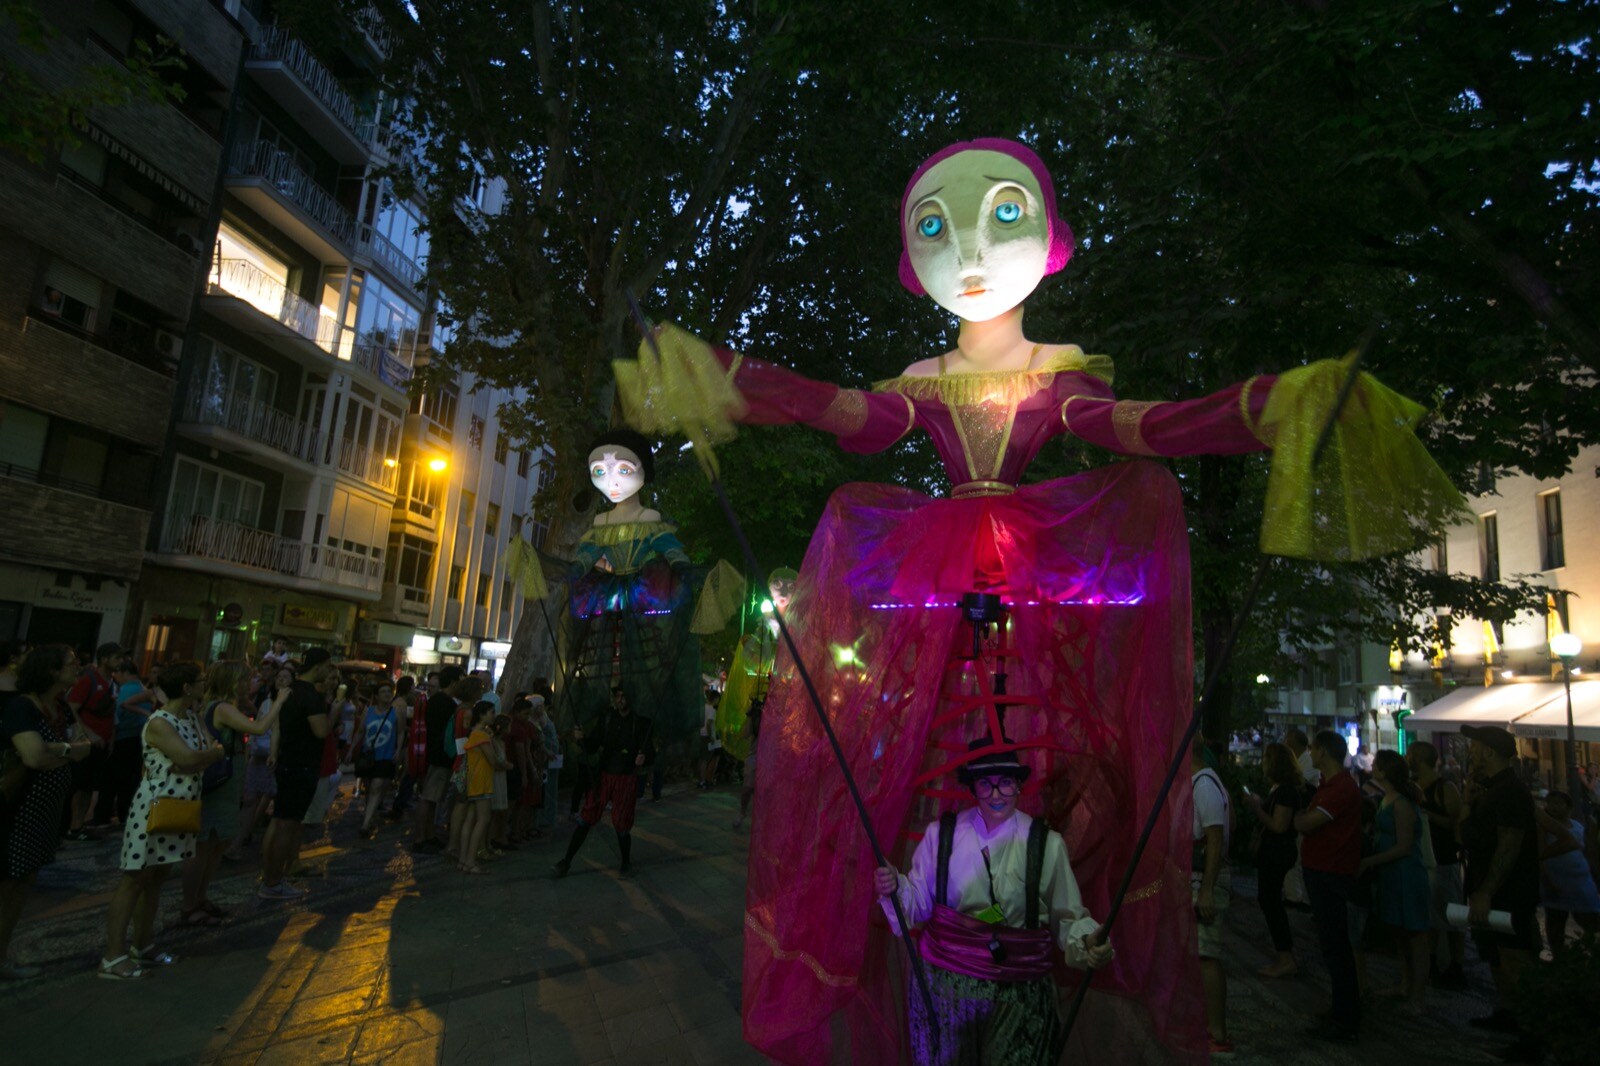 La compañía Yera Teatro presentó ayer su espectáculo 'Meninas', un pasacalles realizado con marionetas gigantes, y que se paseó por el centro de la capital, desde la fuente de las Granadas a la plaza de las Pasiegas